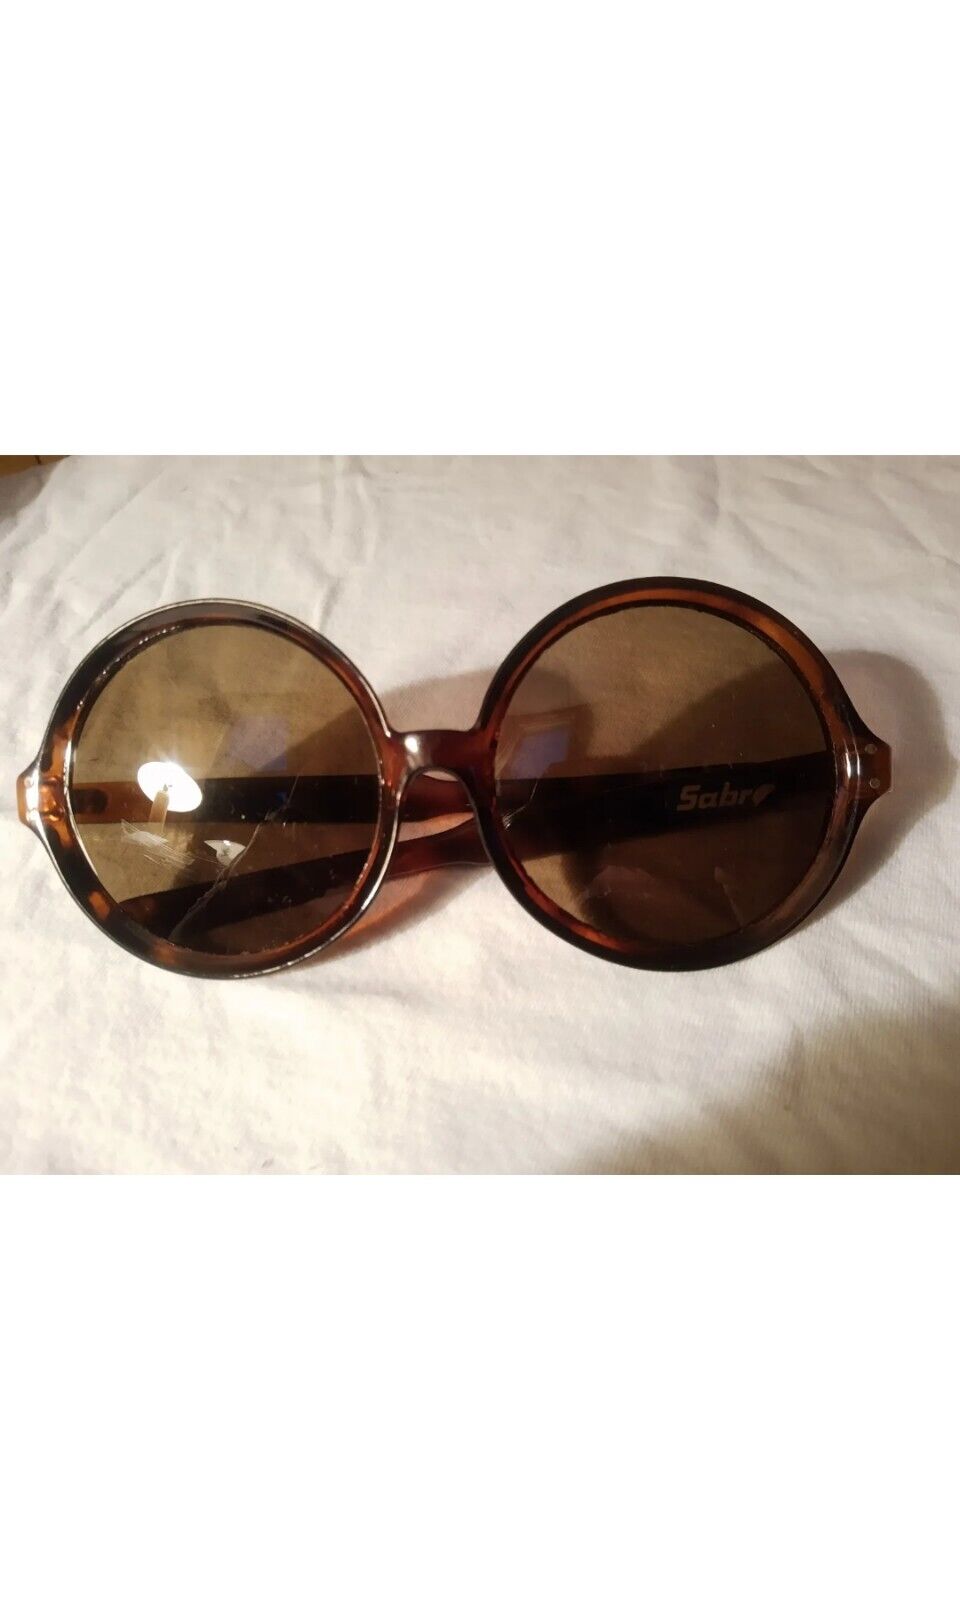 Vtg Huge Round Sabre Lens Brown Frame Sunglasses Women's Tortoise Shell 70's Exc